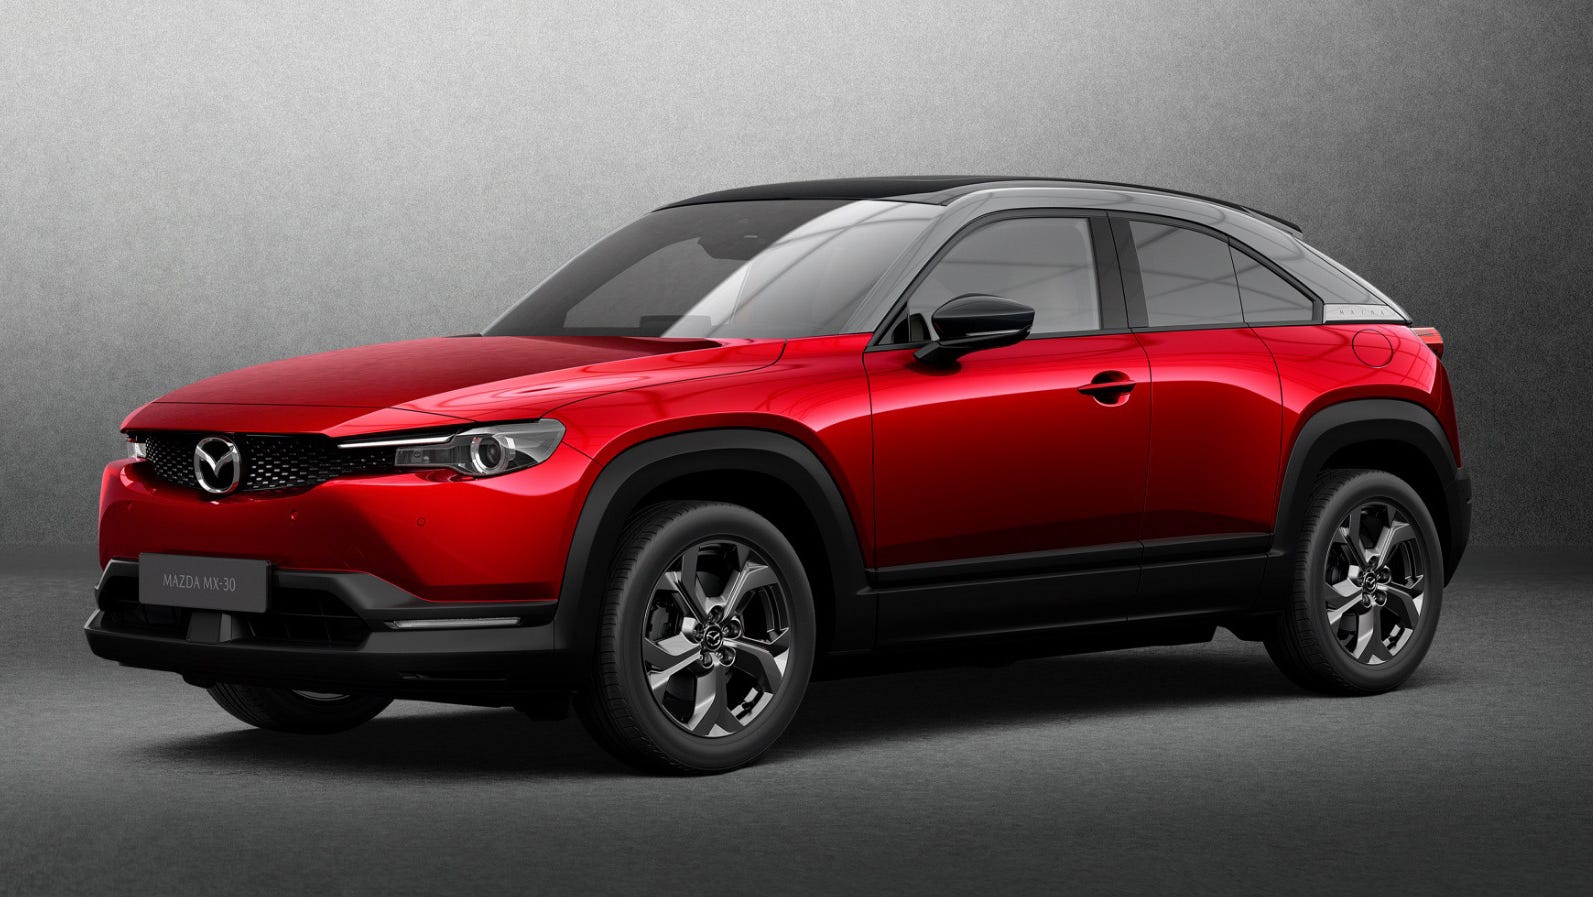 Mazda electric car revealed: Mazda MX-30 crossover makes debut